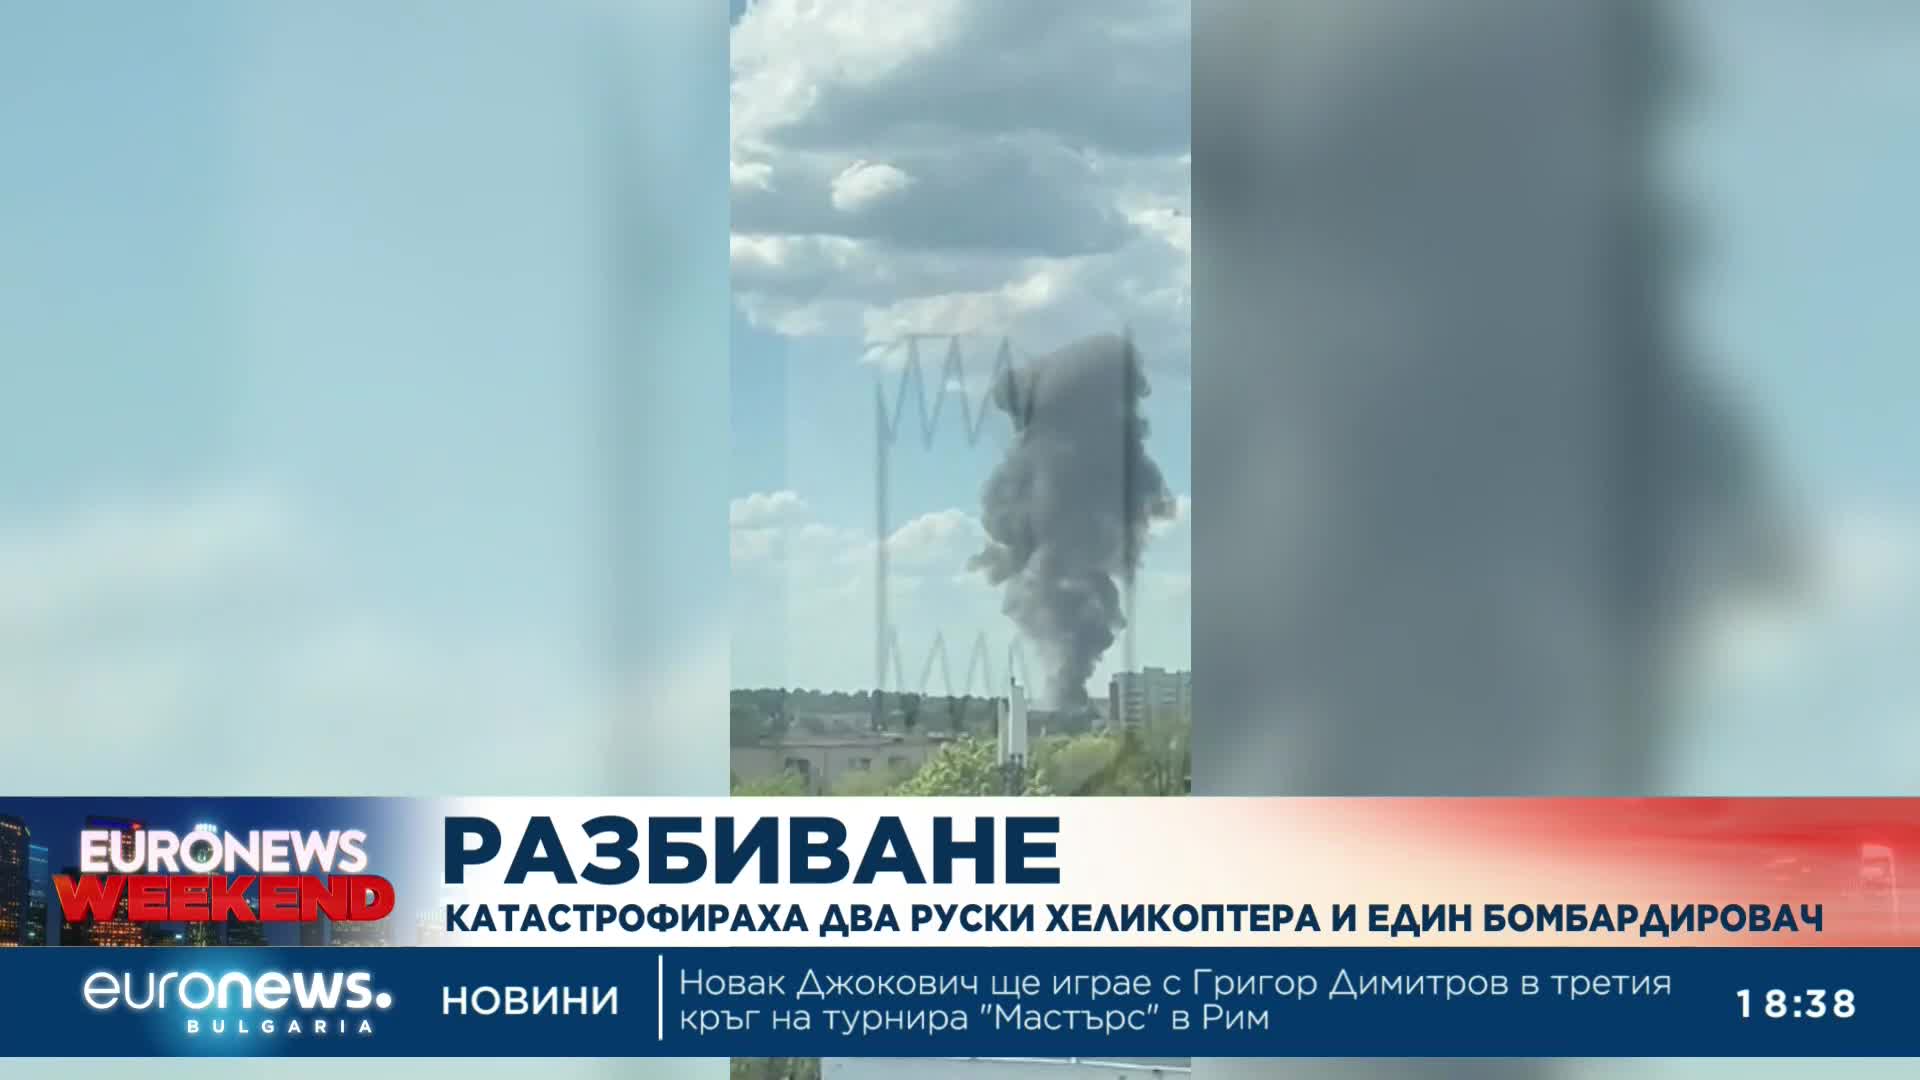 Два руски хеликоптера и един бомбардировач катастрофираха близо до границата с Украйна